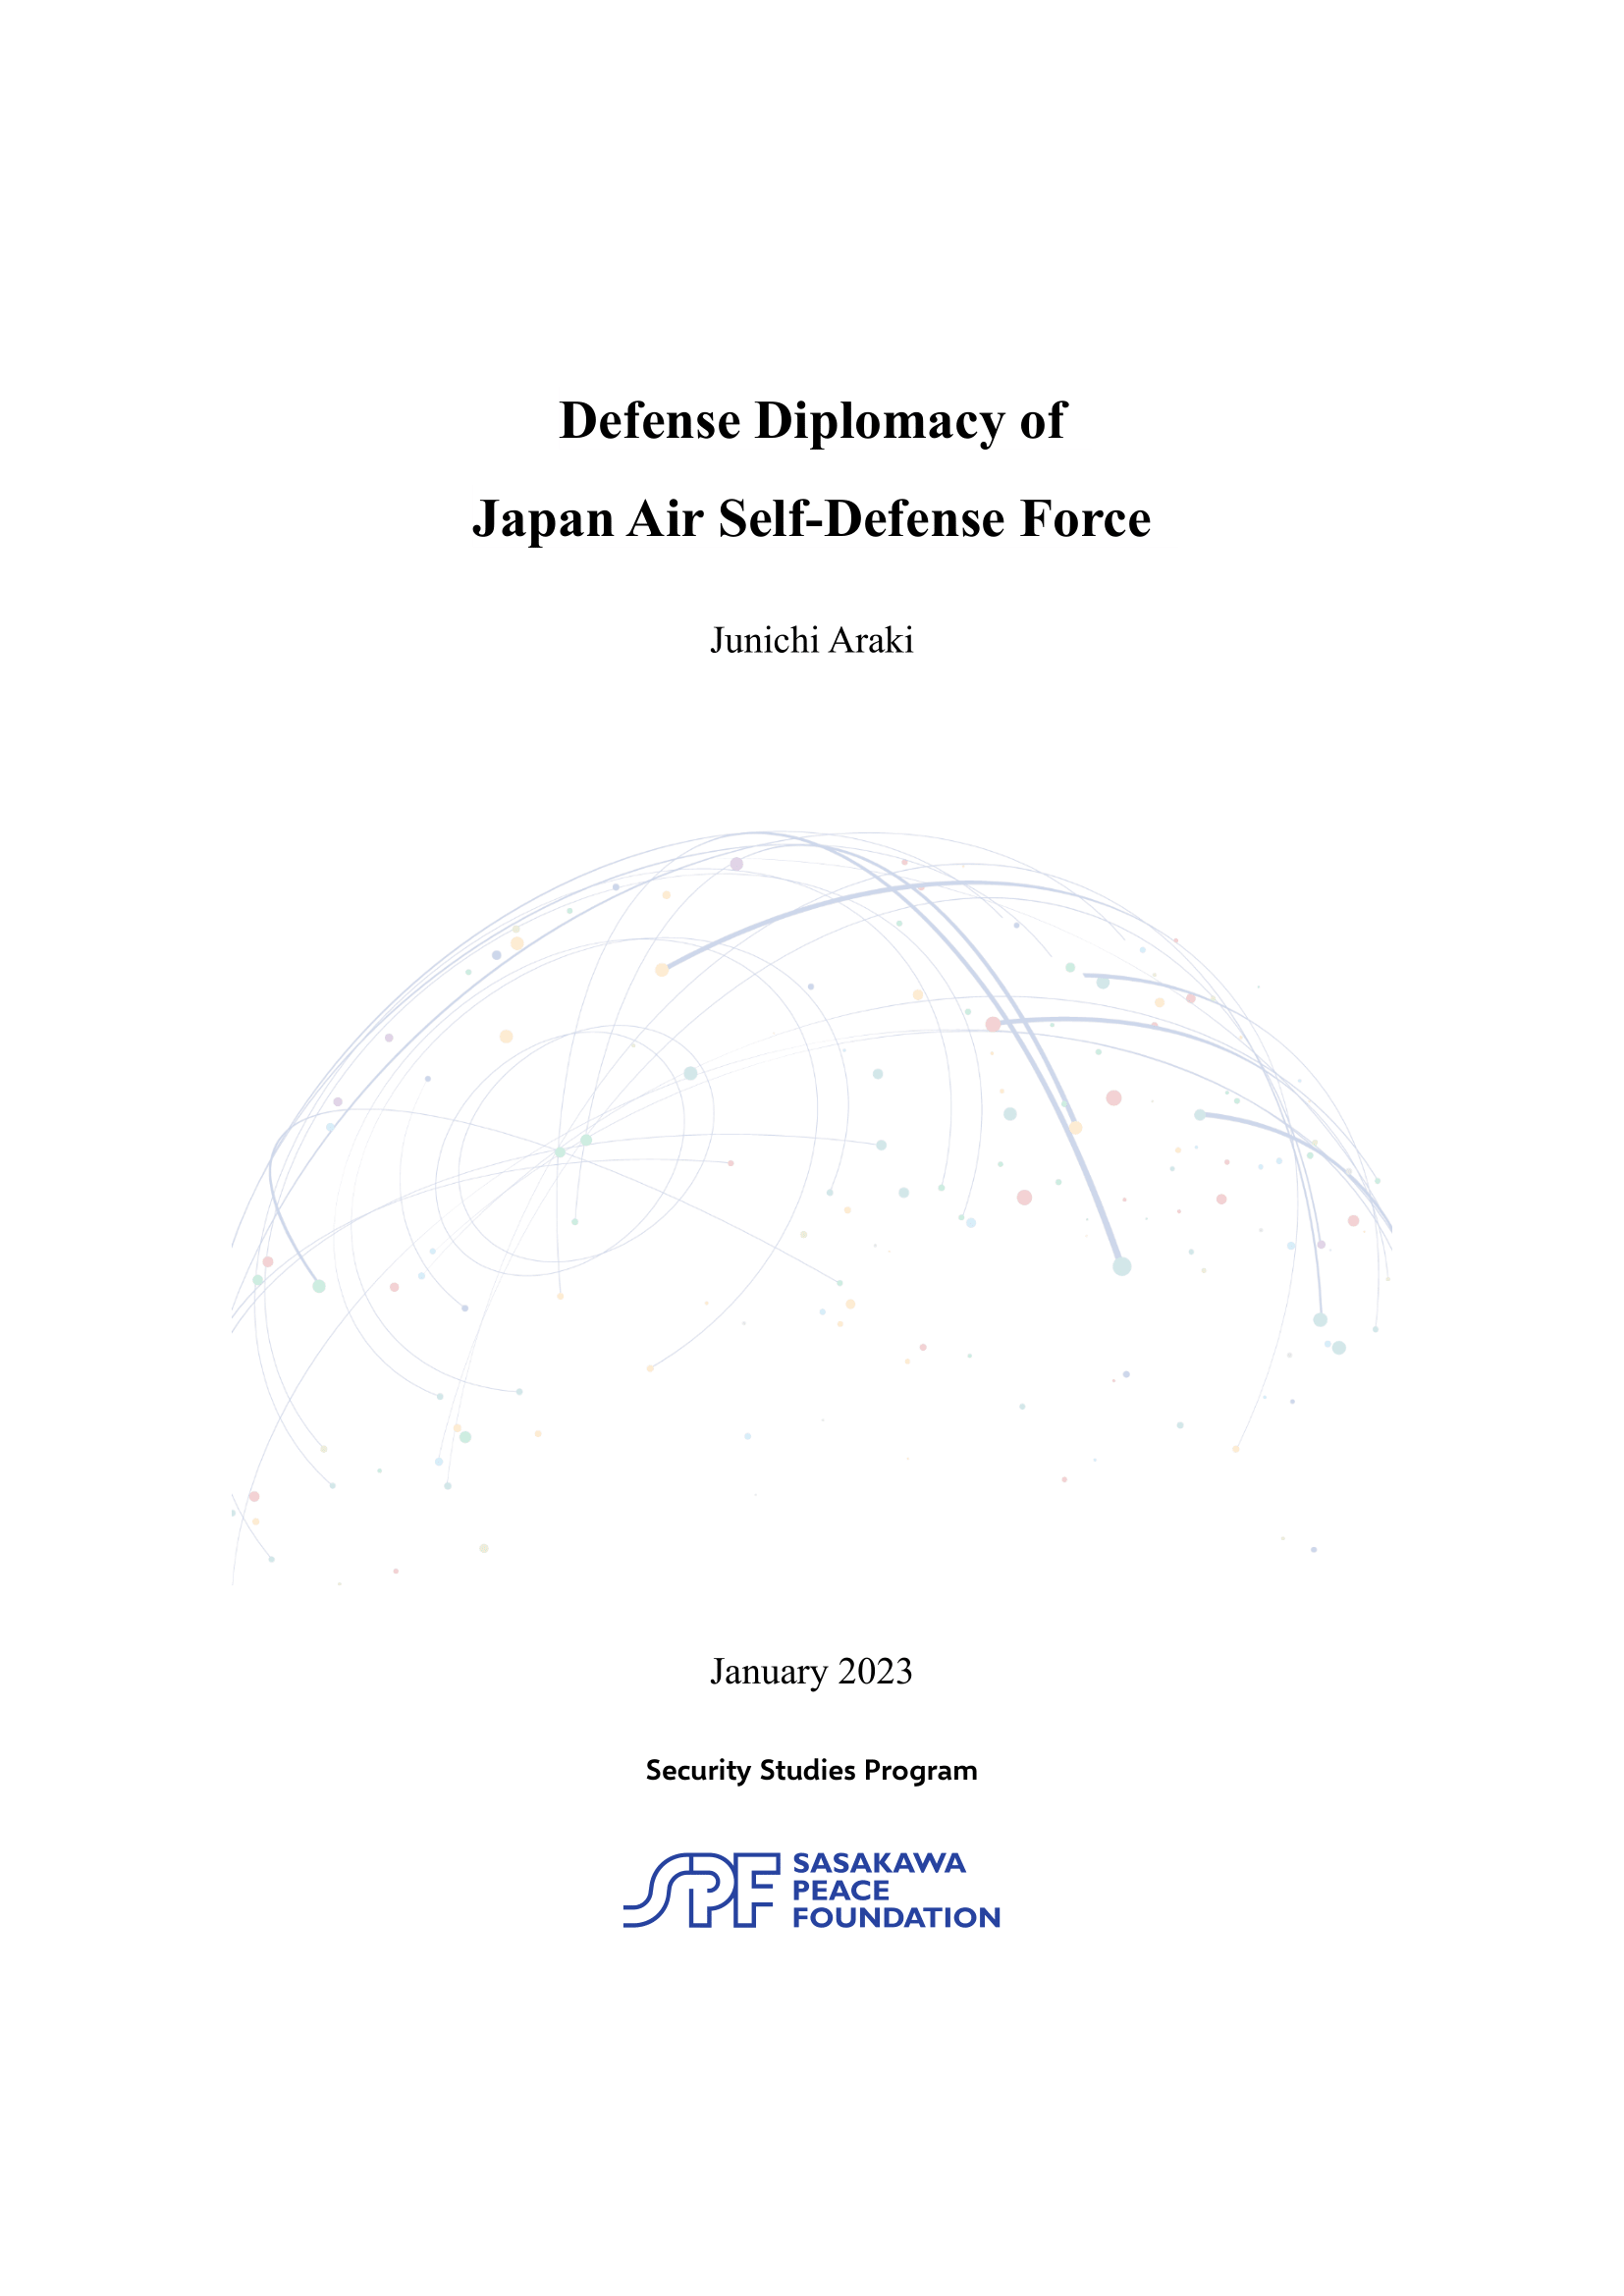 Defense Diplomacy of Japan Air Self-Defense Force